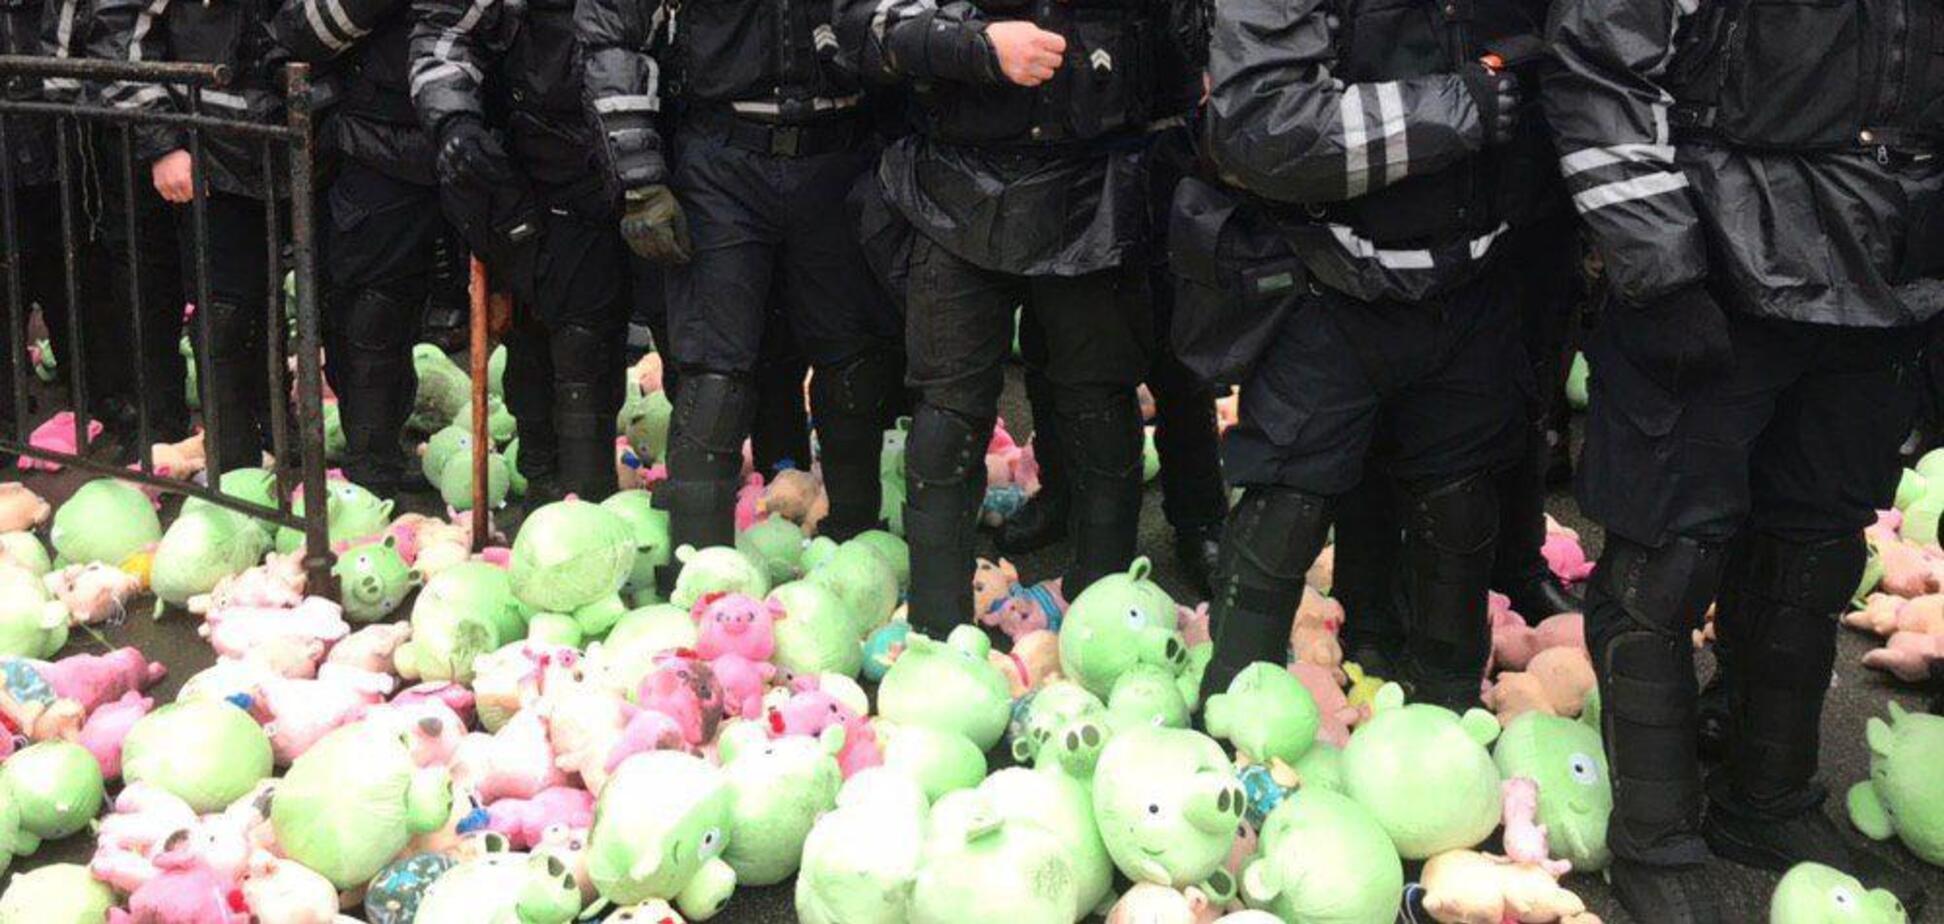  Радикалы из 'Нацкорпуса' забросали полицейских свиньями: фото и видео с места событий